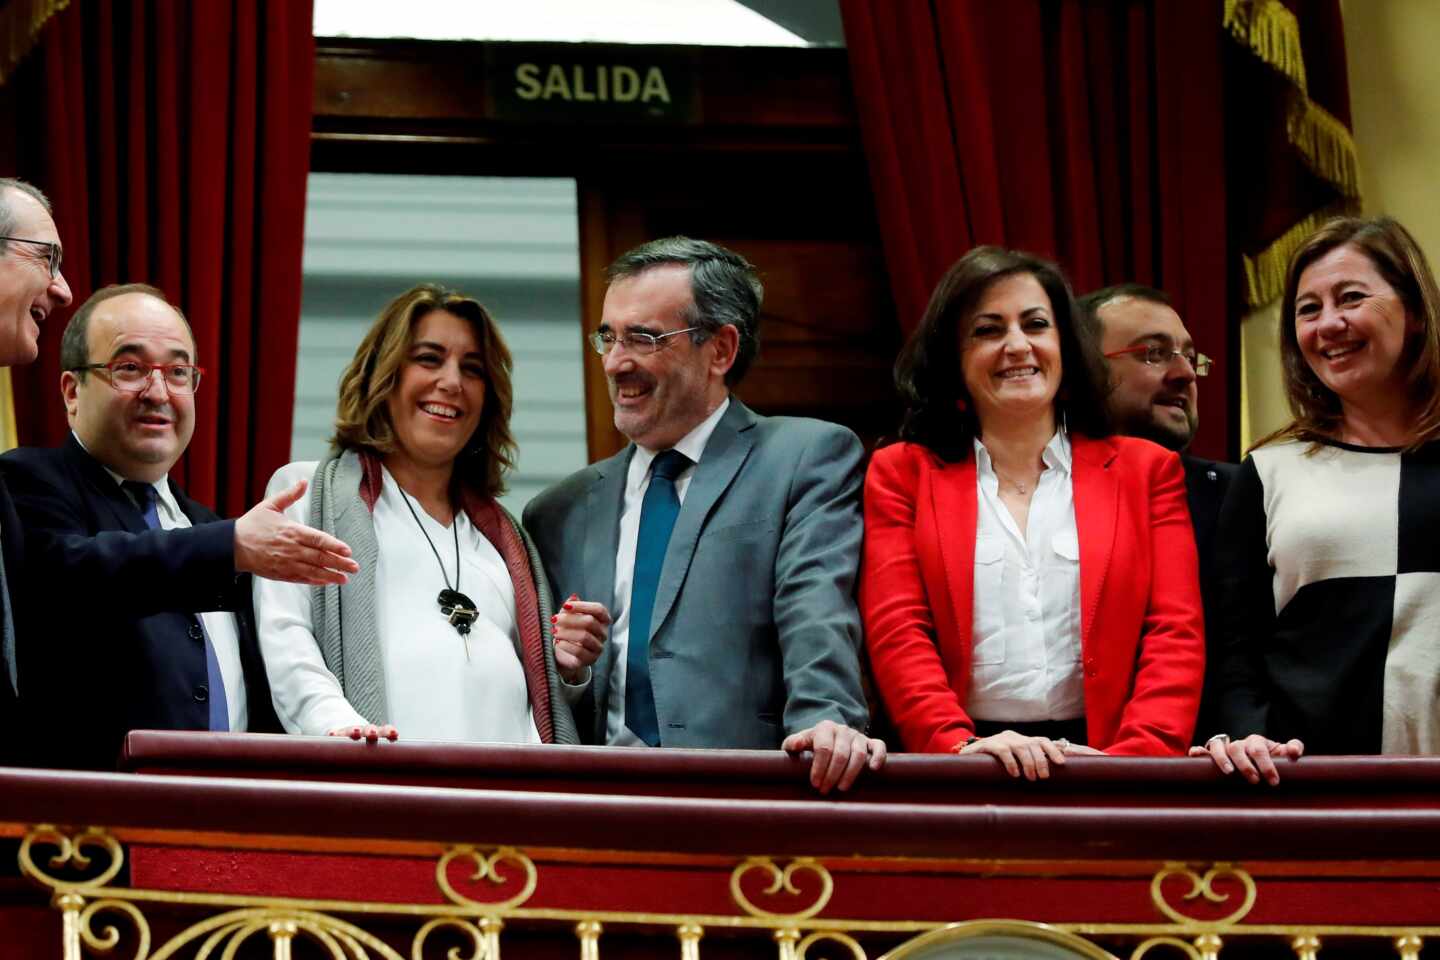 Los críticos con Susana Díaz piden dejar de "culpar a los otros" del fracaso del PSOE-A